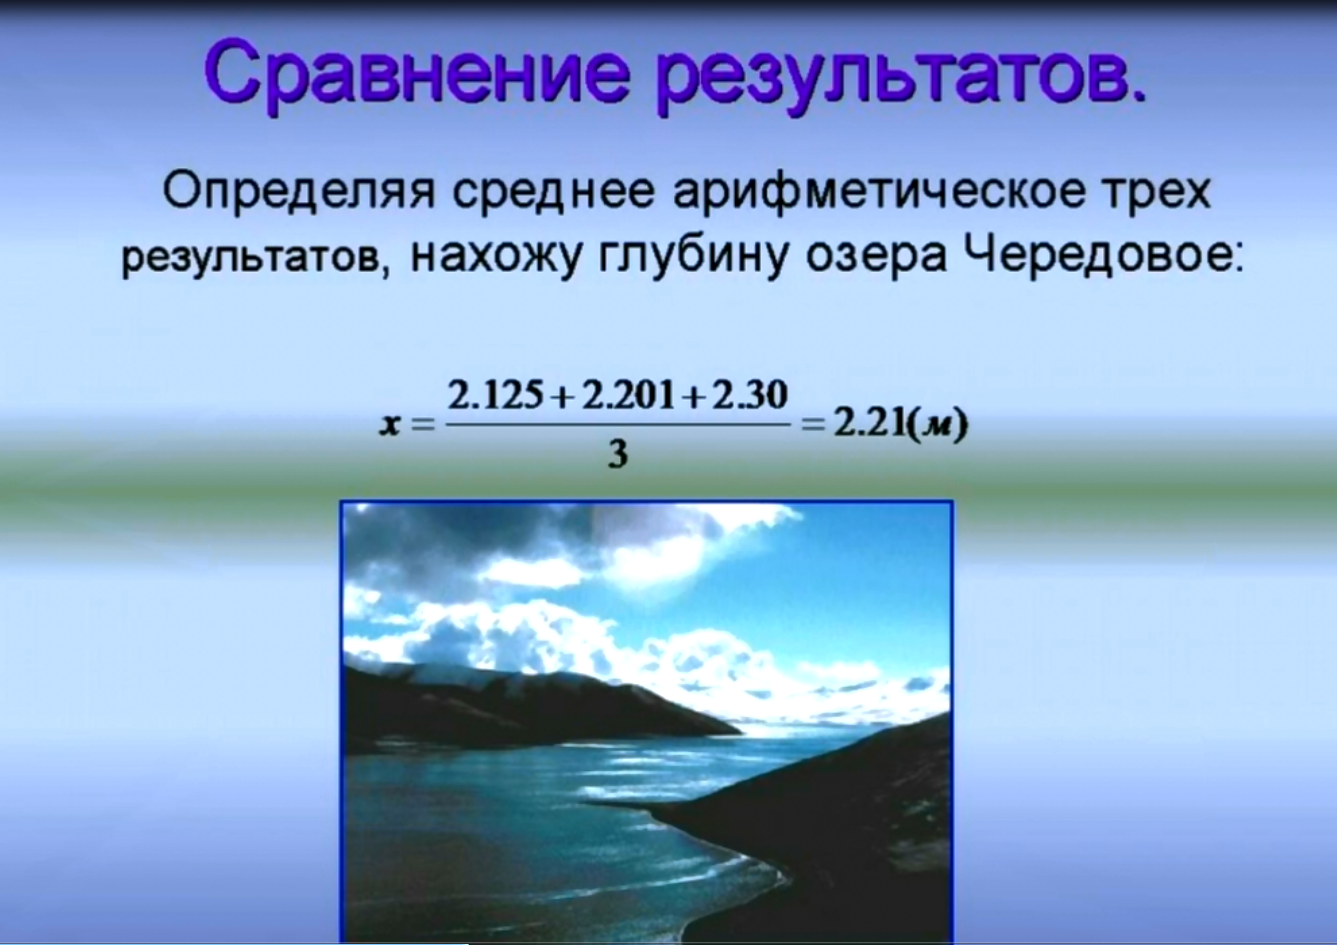 Исследовательская работа Мифы и реальность озера Чередовое по географии (11 класс)